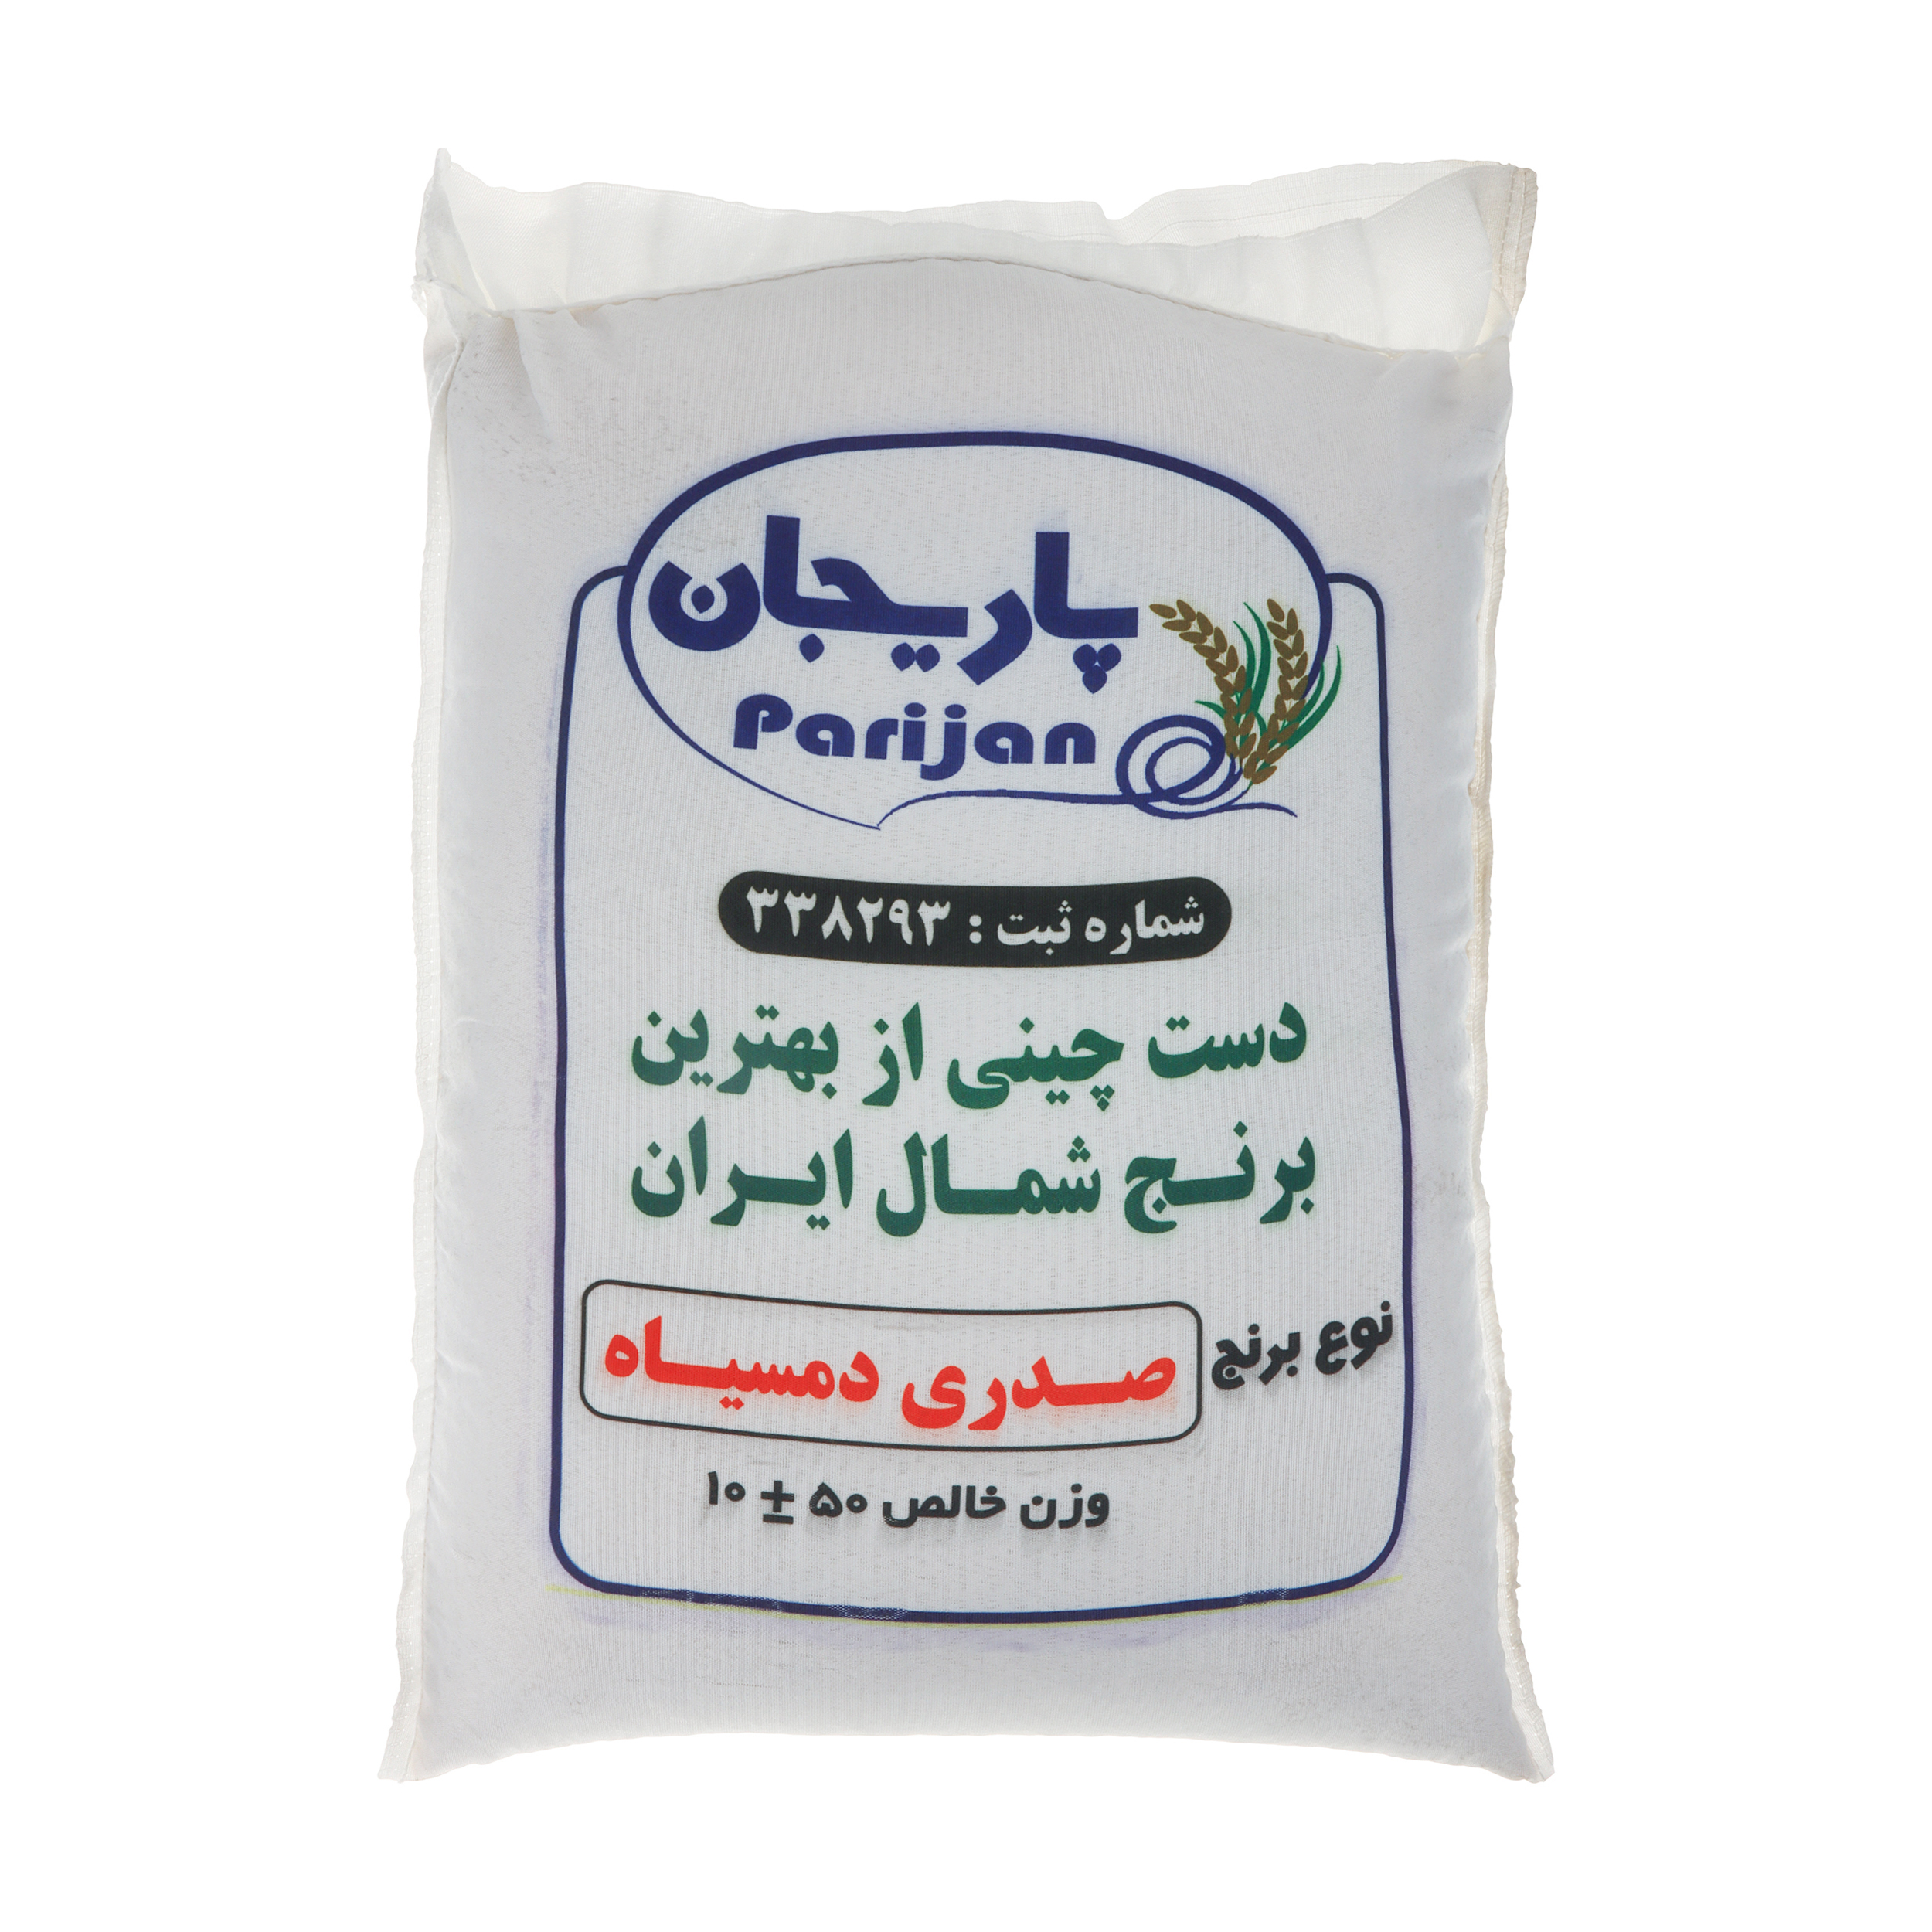 نکته خرید - قیمت روز برنج درجه یک صدری دم سیاه پاریجان - 10 کیلوگرم خرید